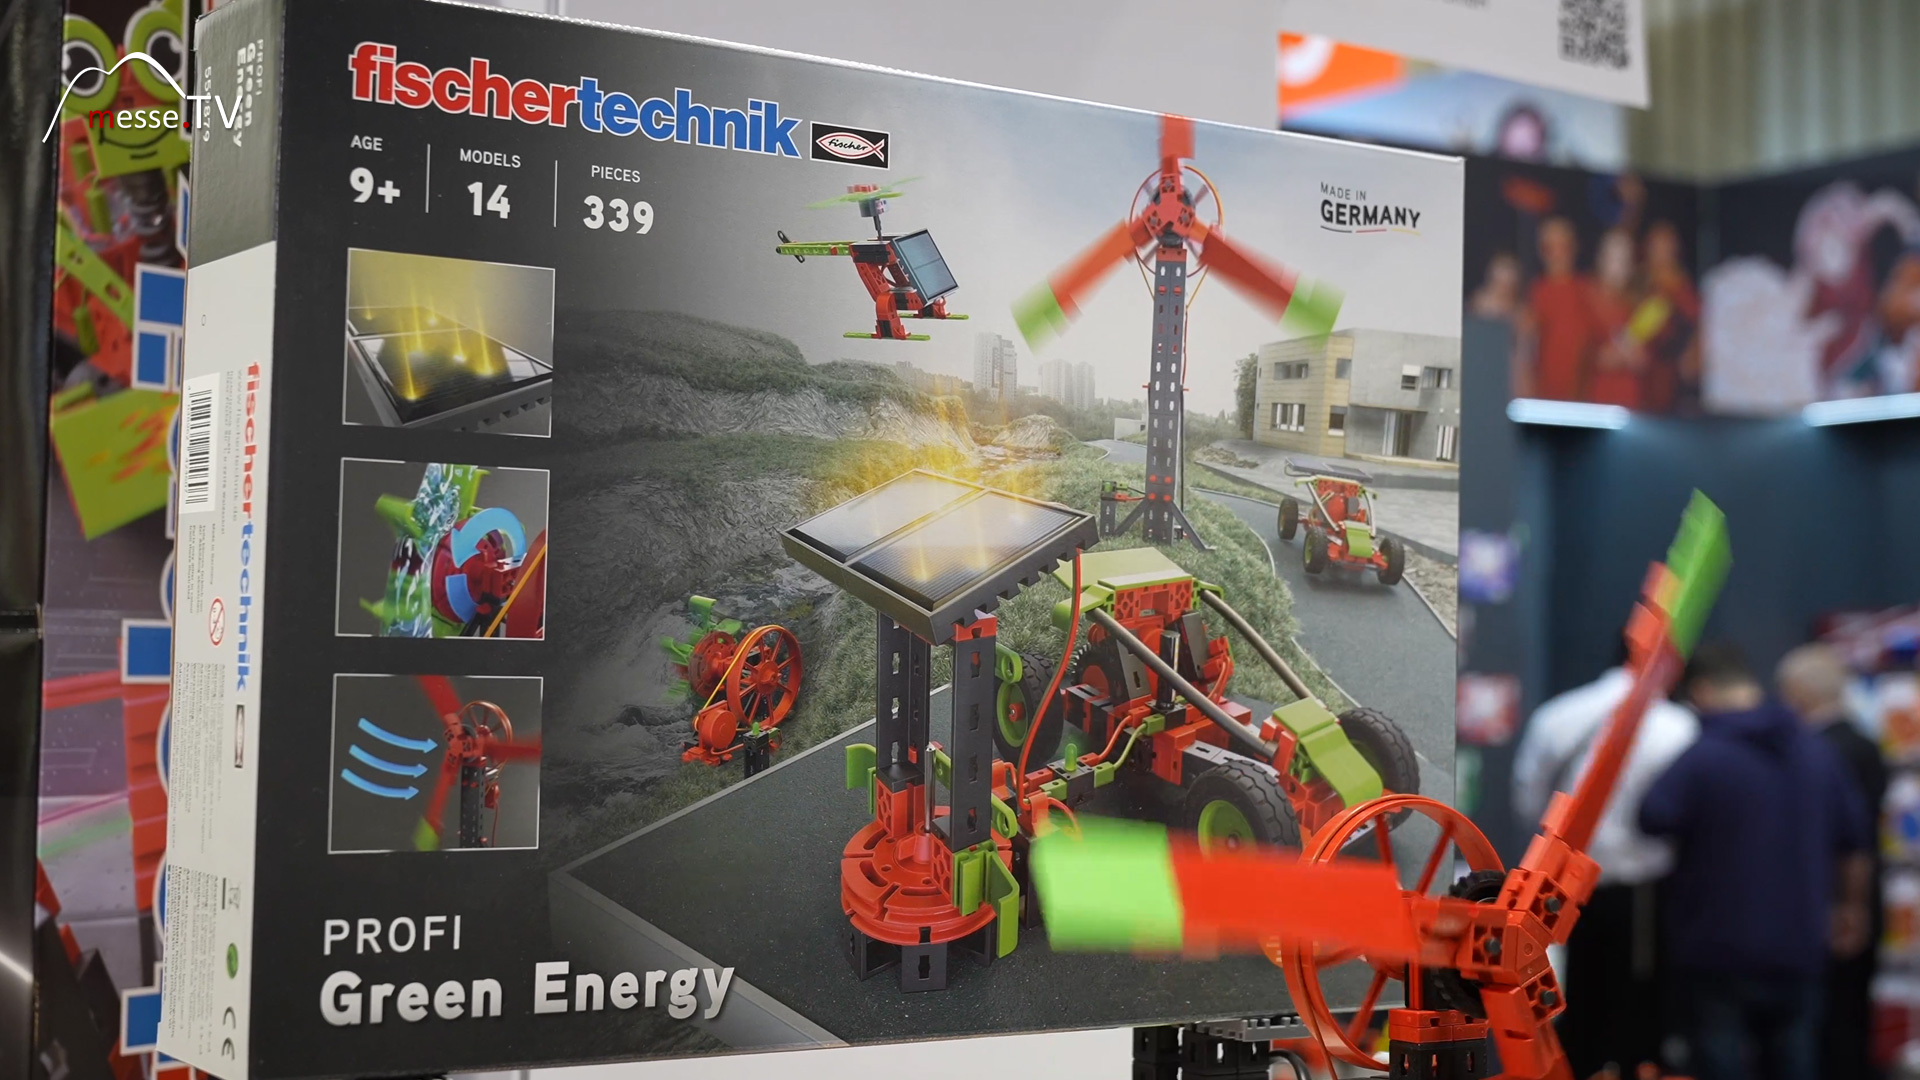 Green Energy Wind power Renewable Energy fischertechnik Construction Kit